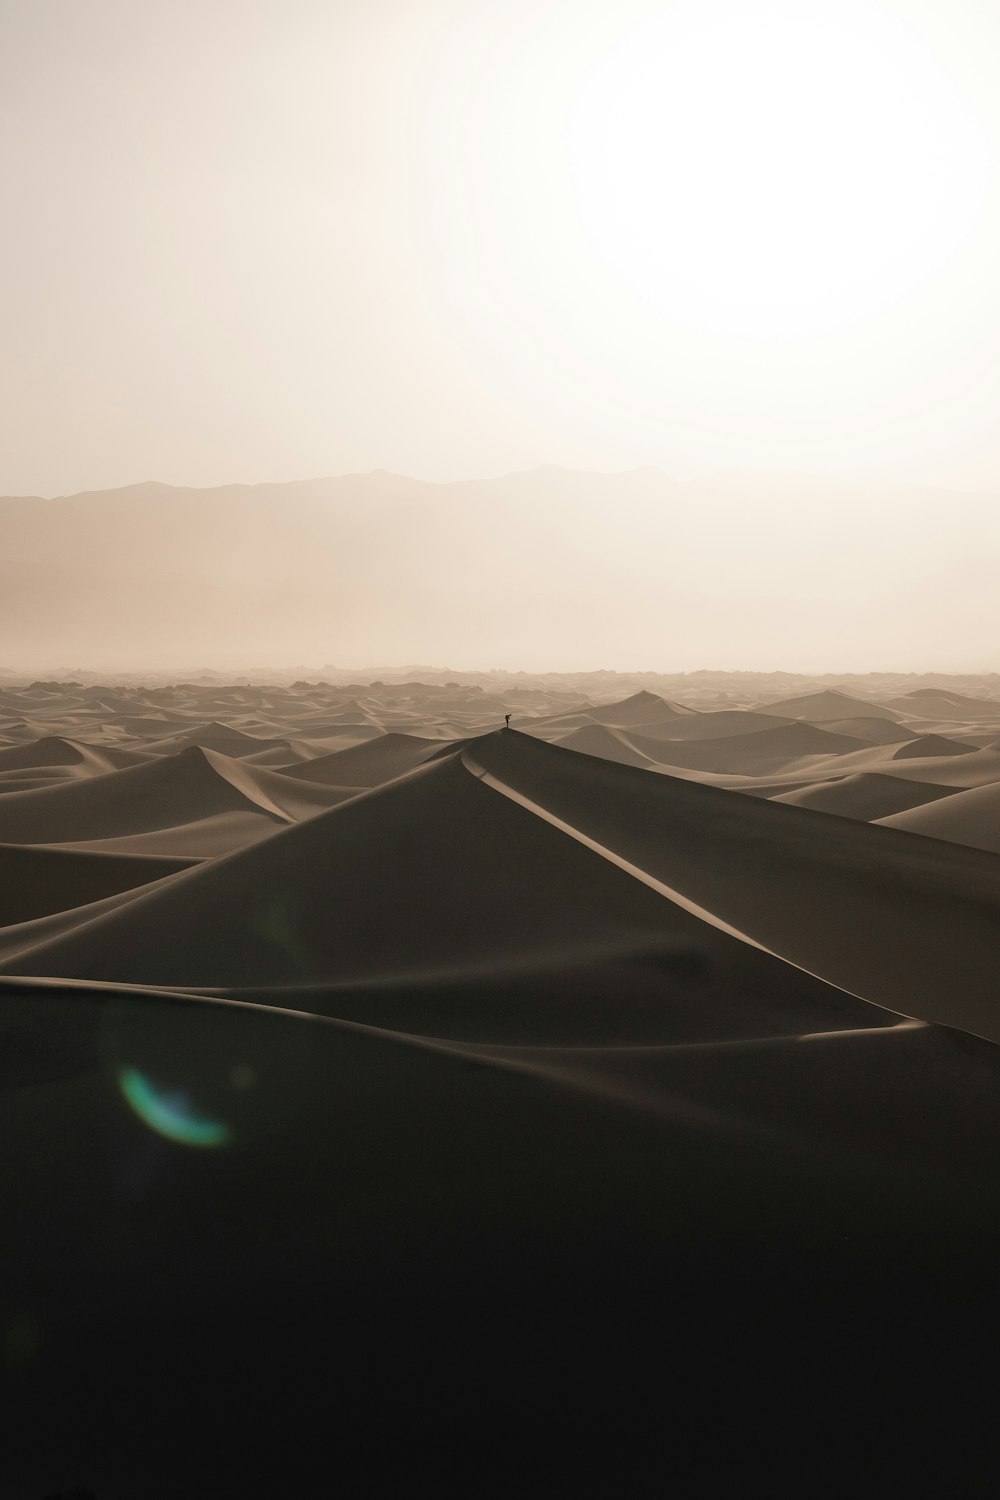 a view of a desert